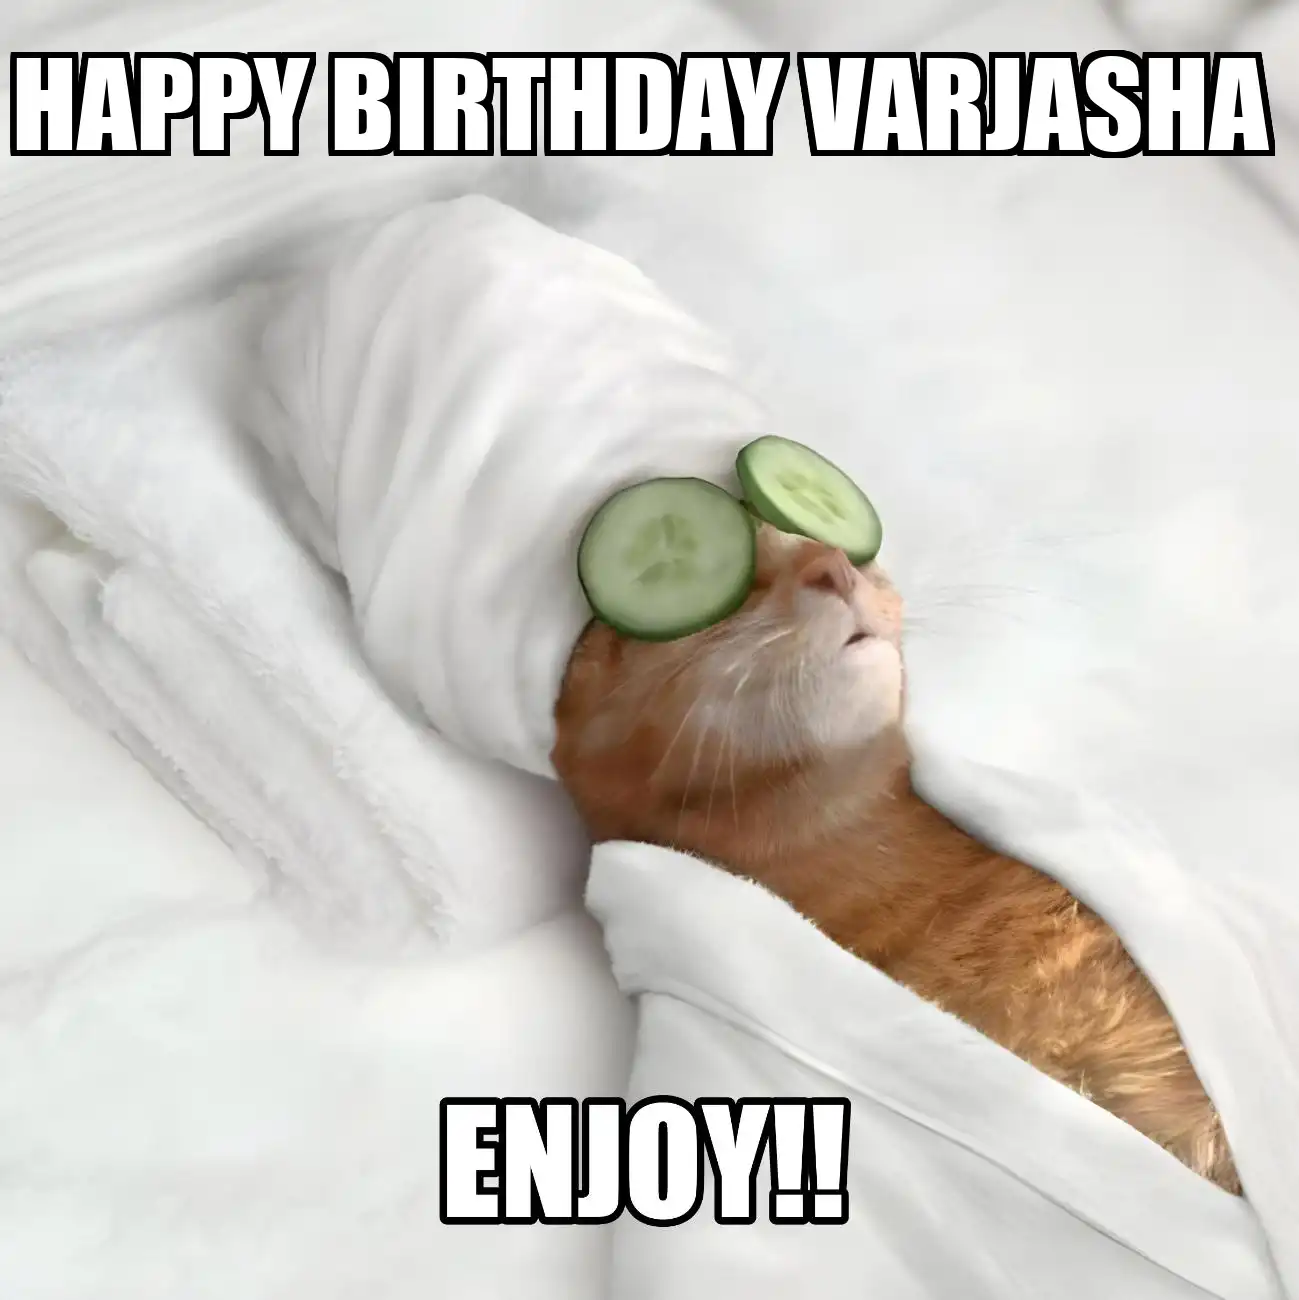 Happy Birthday Varjasha Enjoy Cat Meme